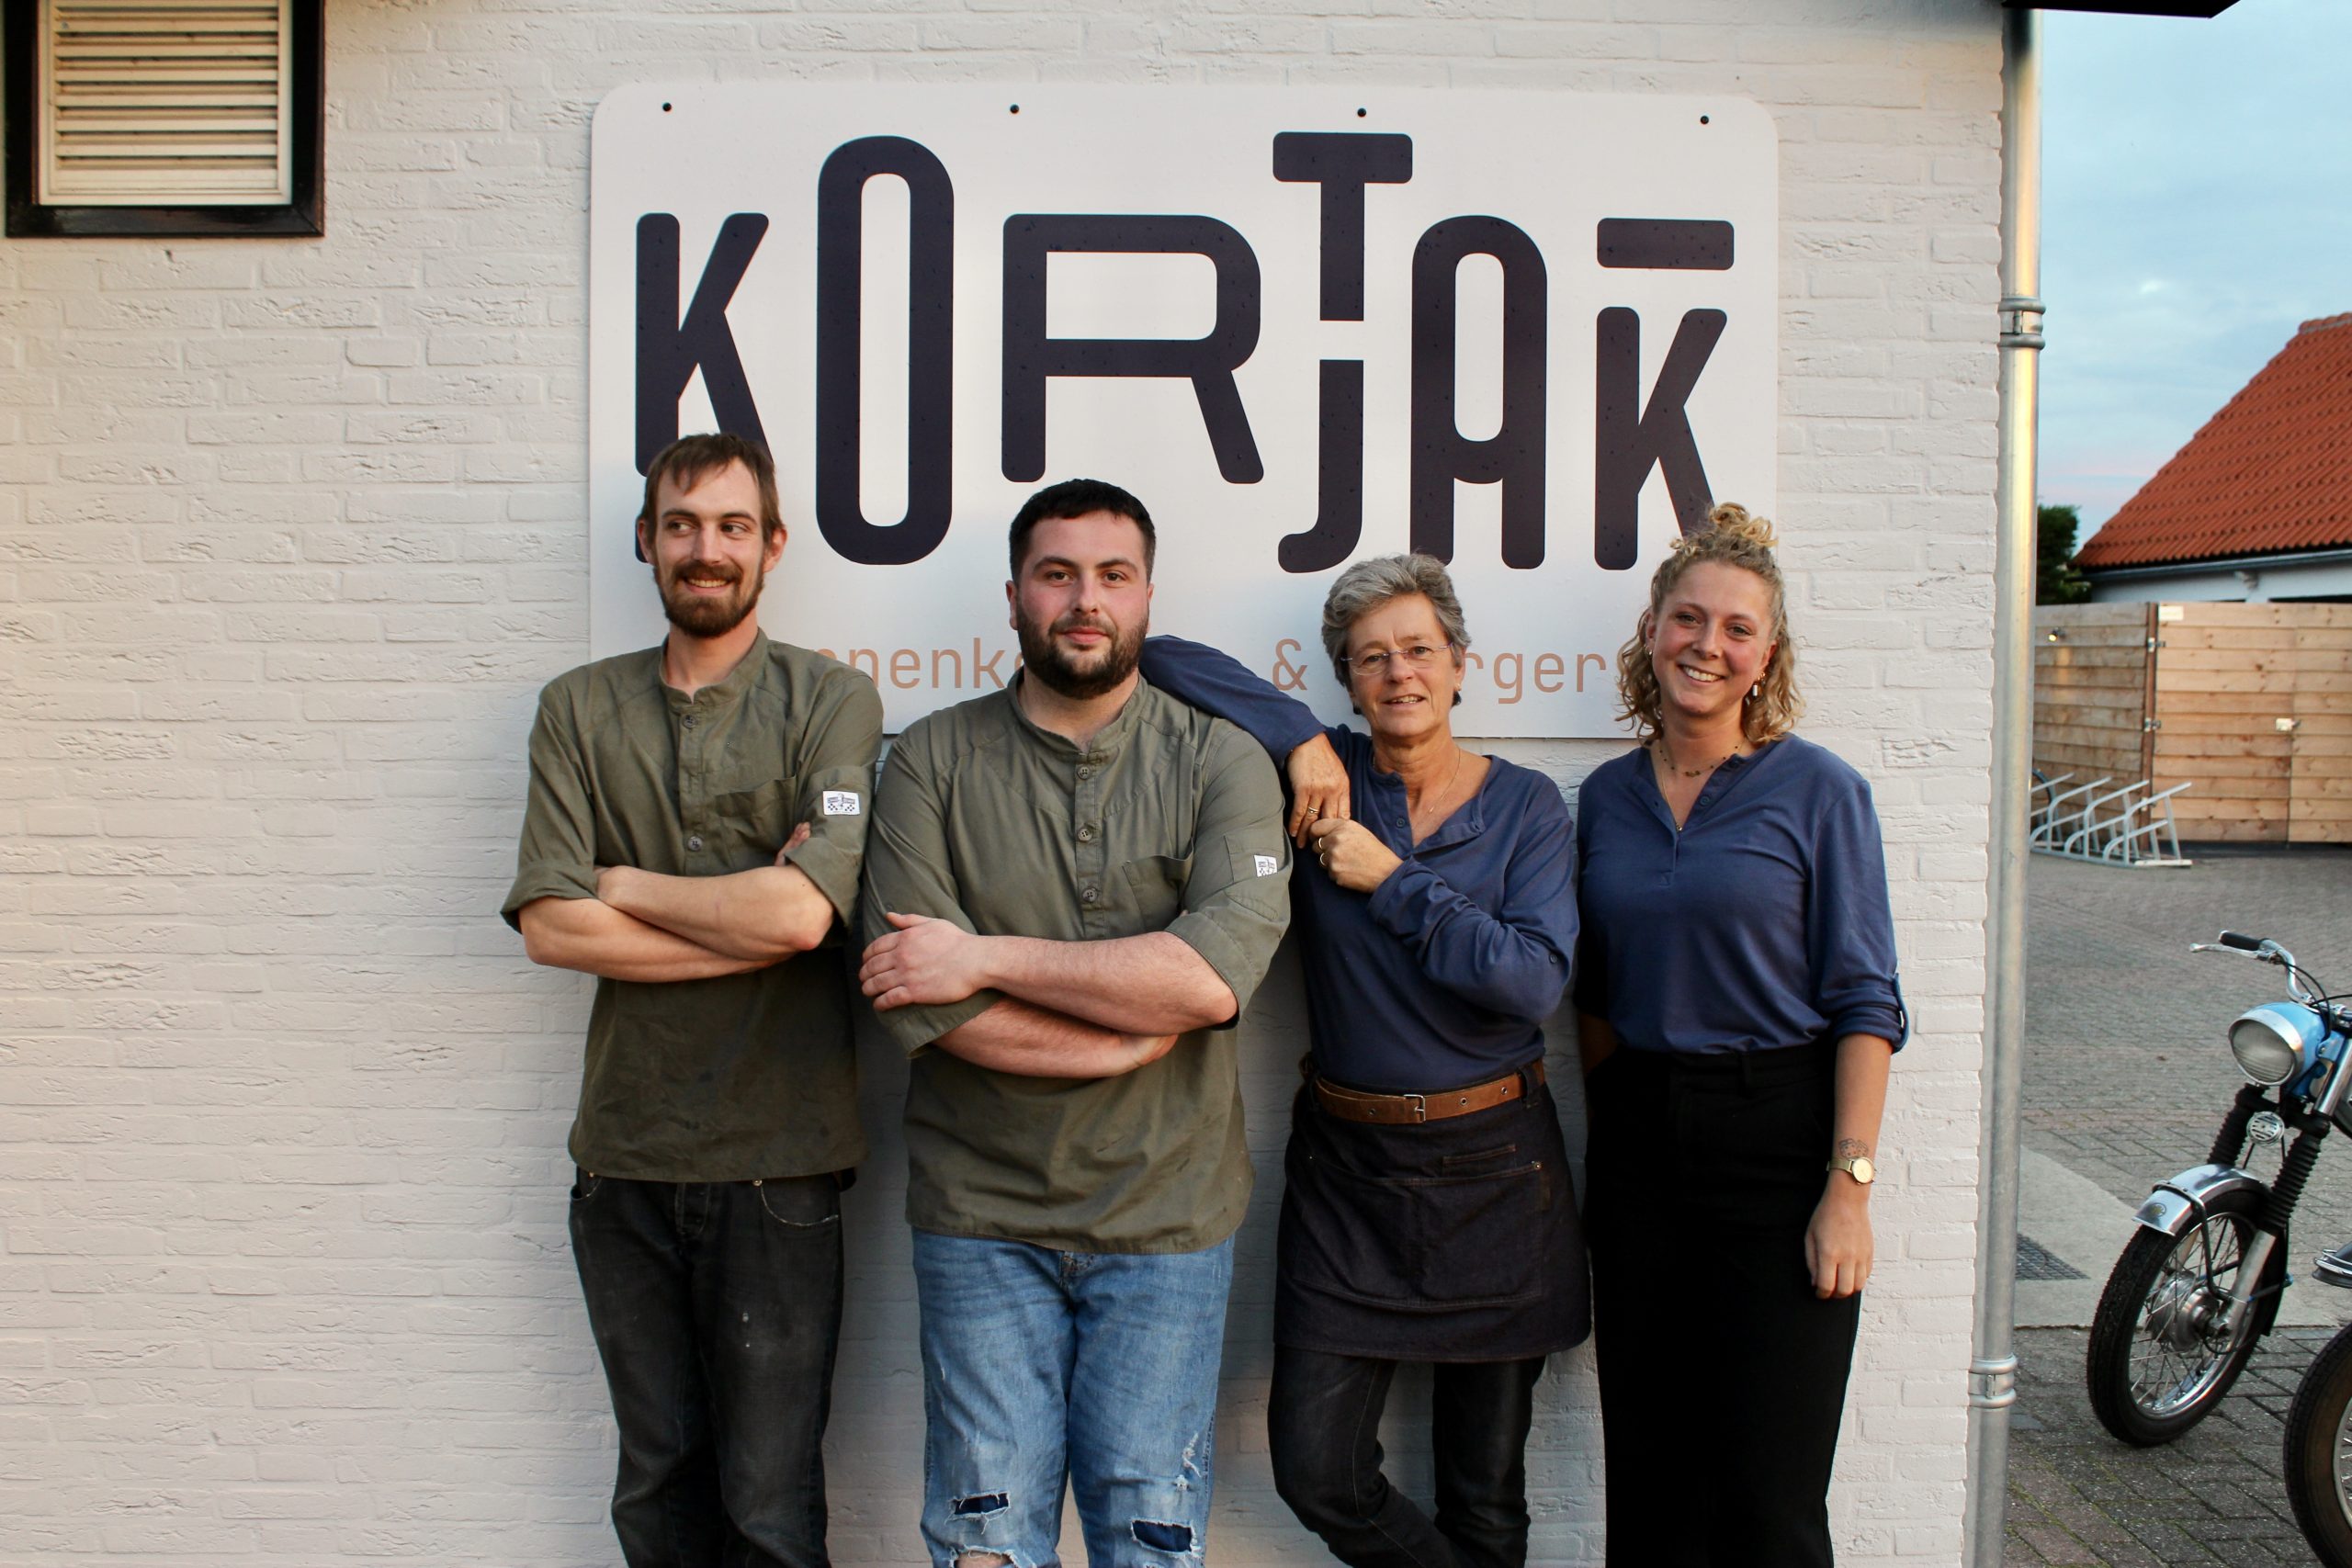 Team Kortjak!